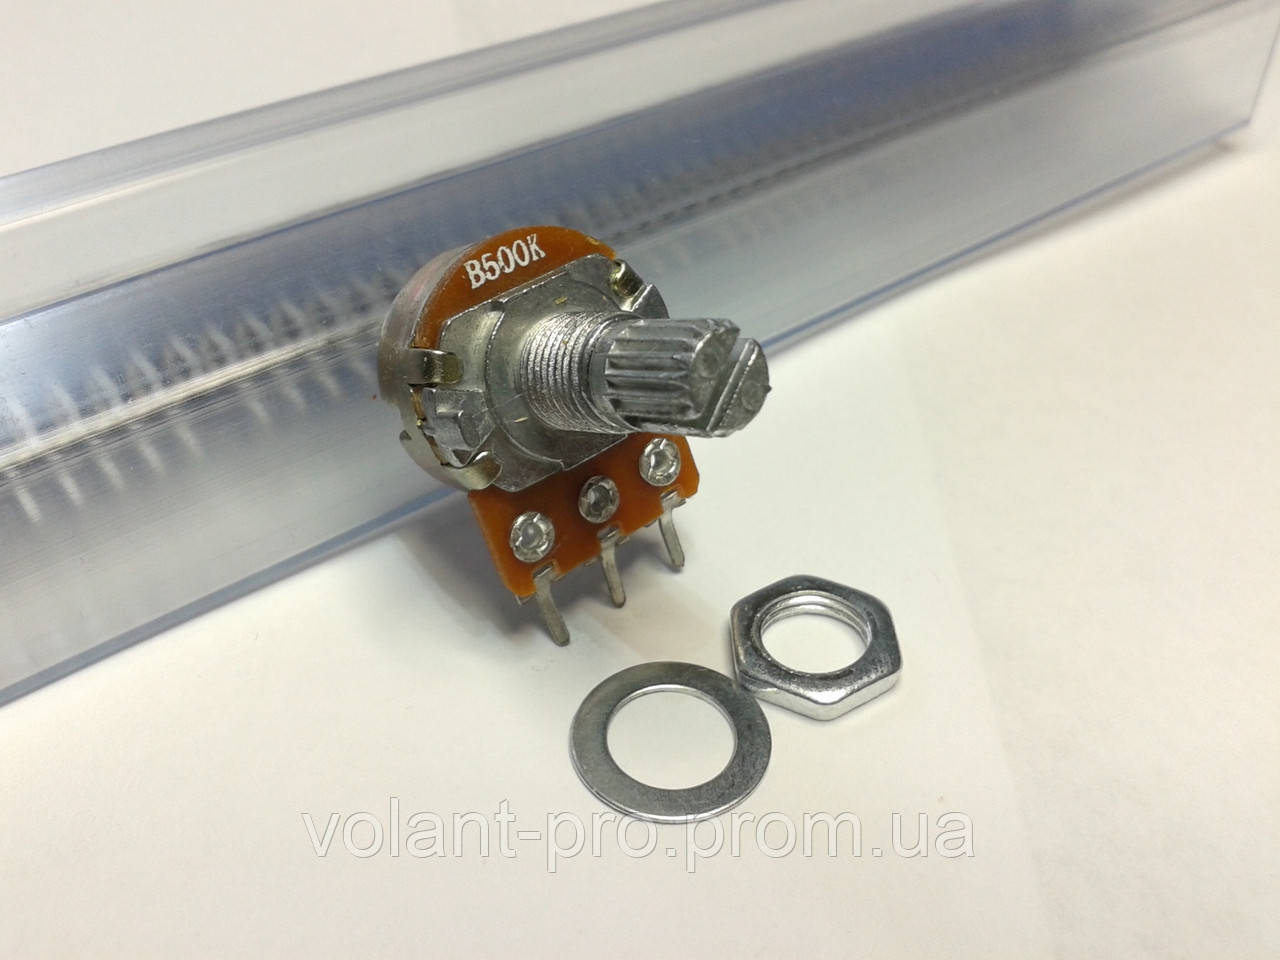 Резистор змінний WH148 500 кОм, 3 pin, моно, 15 мм.